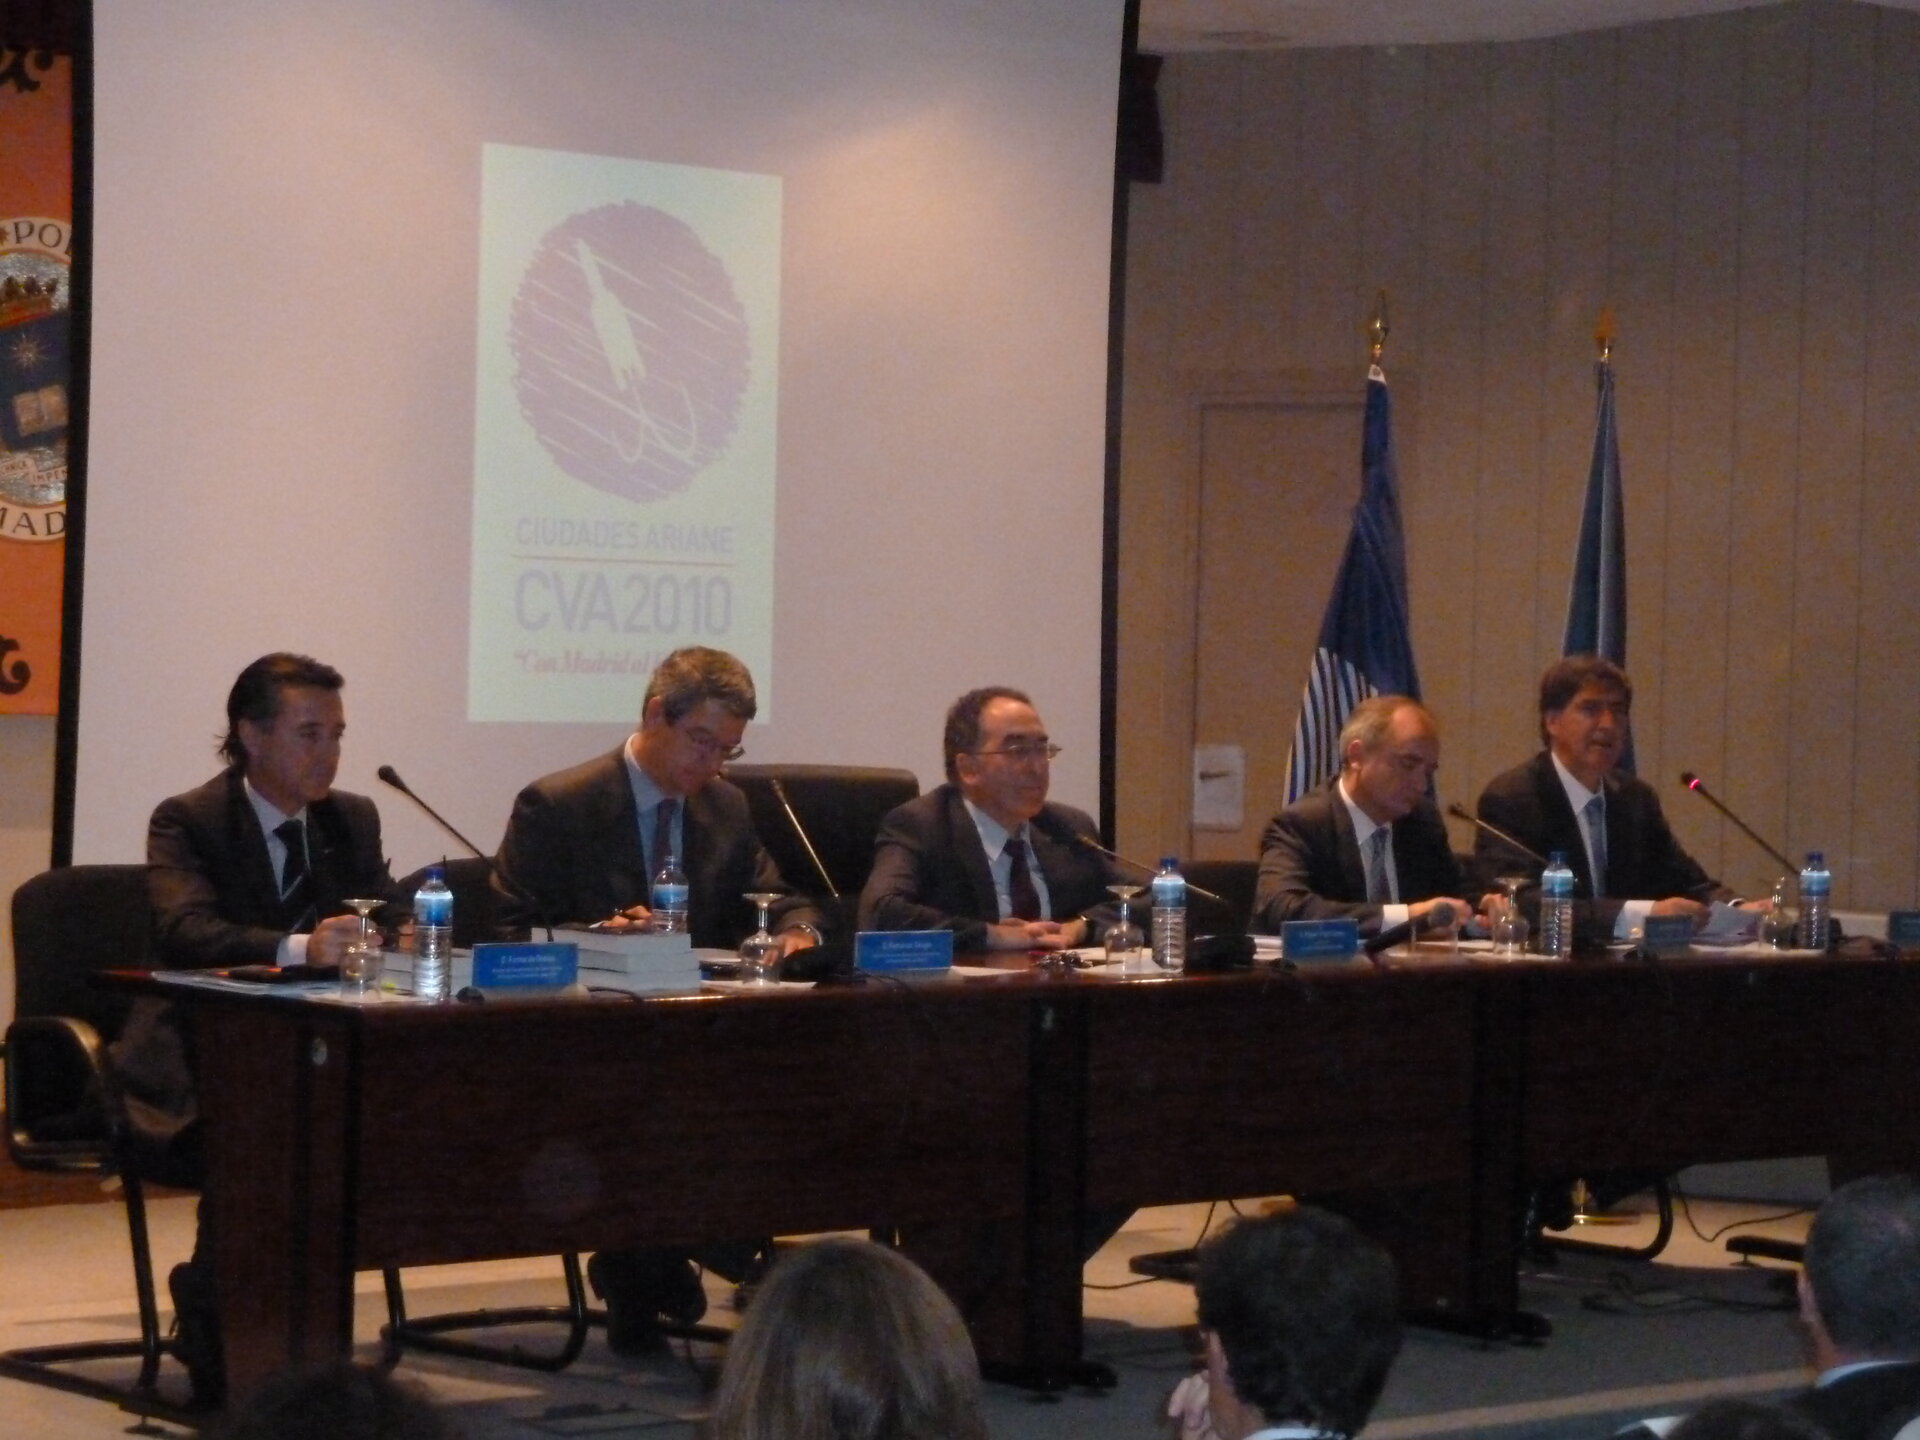 Mesa presidencial durante el evento de clausura de la CVA en la UPM en Madrid